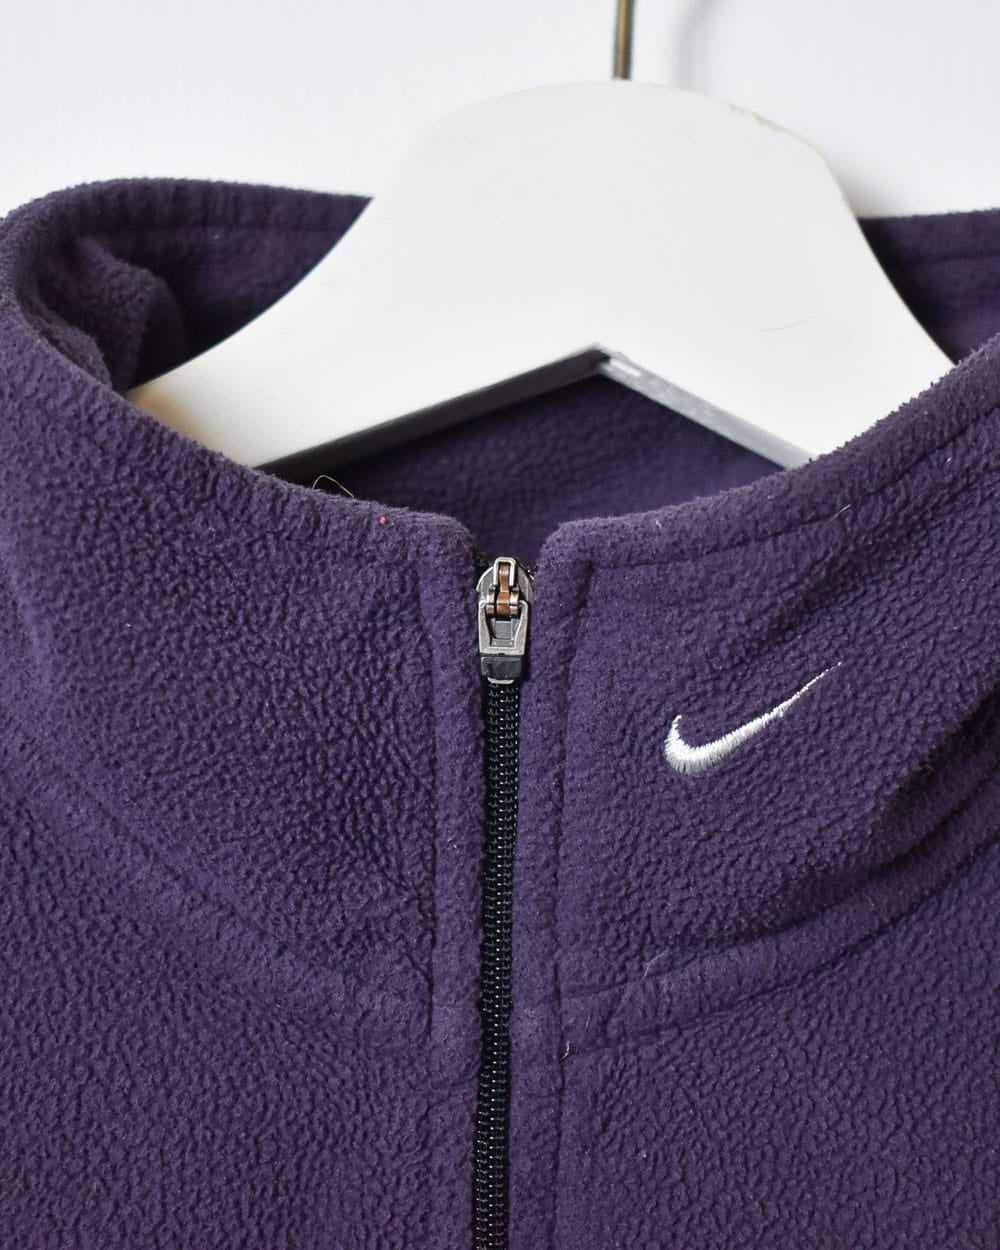 Purple Nike 1/4 Zip Fleece - Small Women's